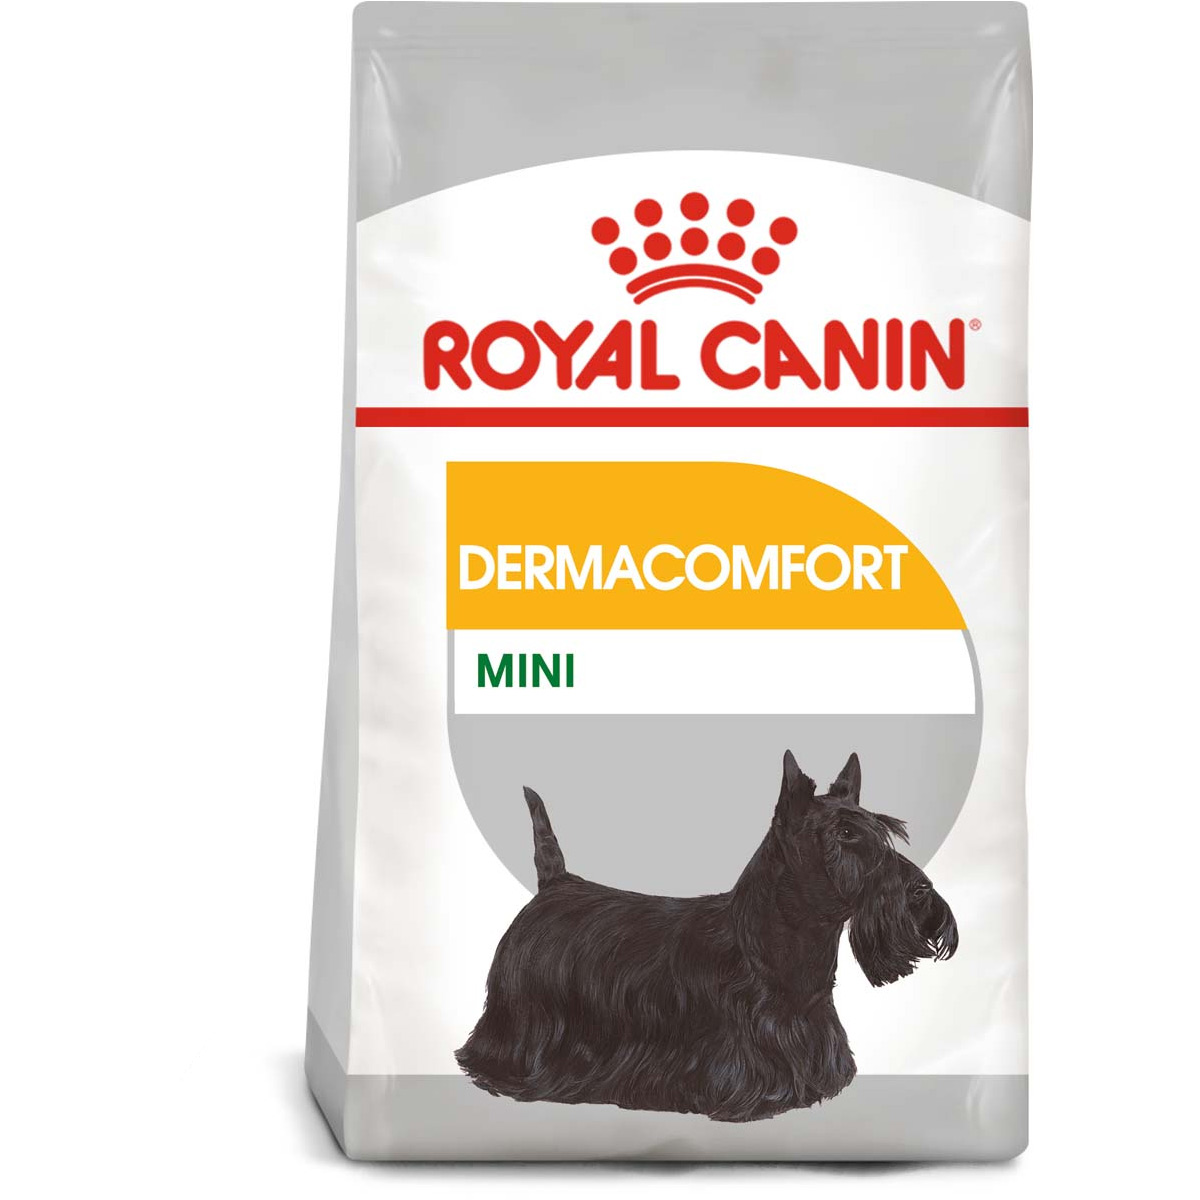 ROYAL CANIN DERMACOMFORT MINI granule pro malé psy s citlivou kůží 3 kg